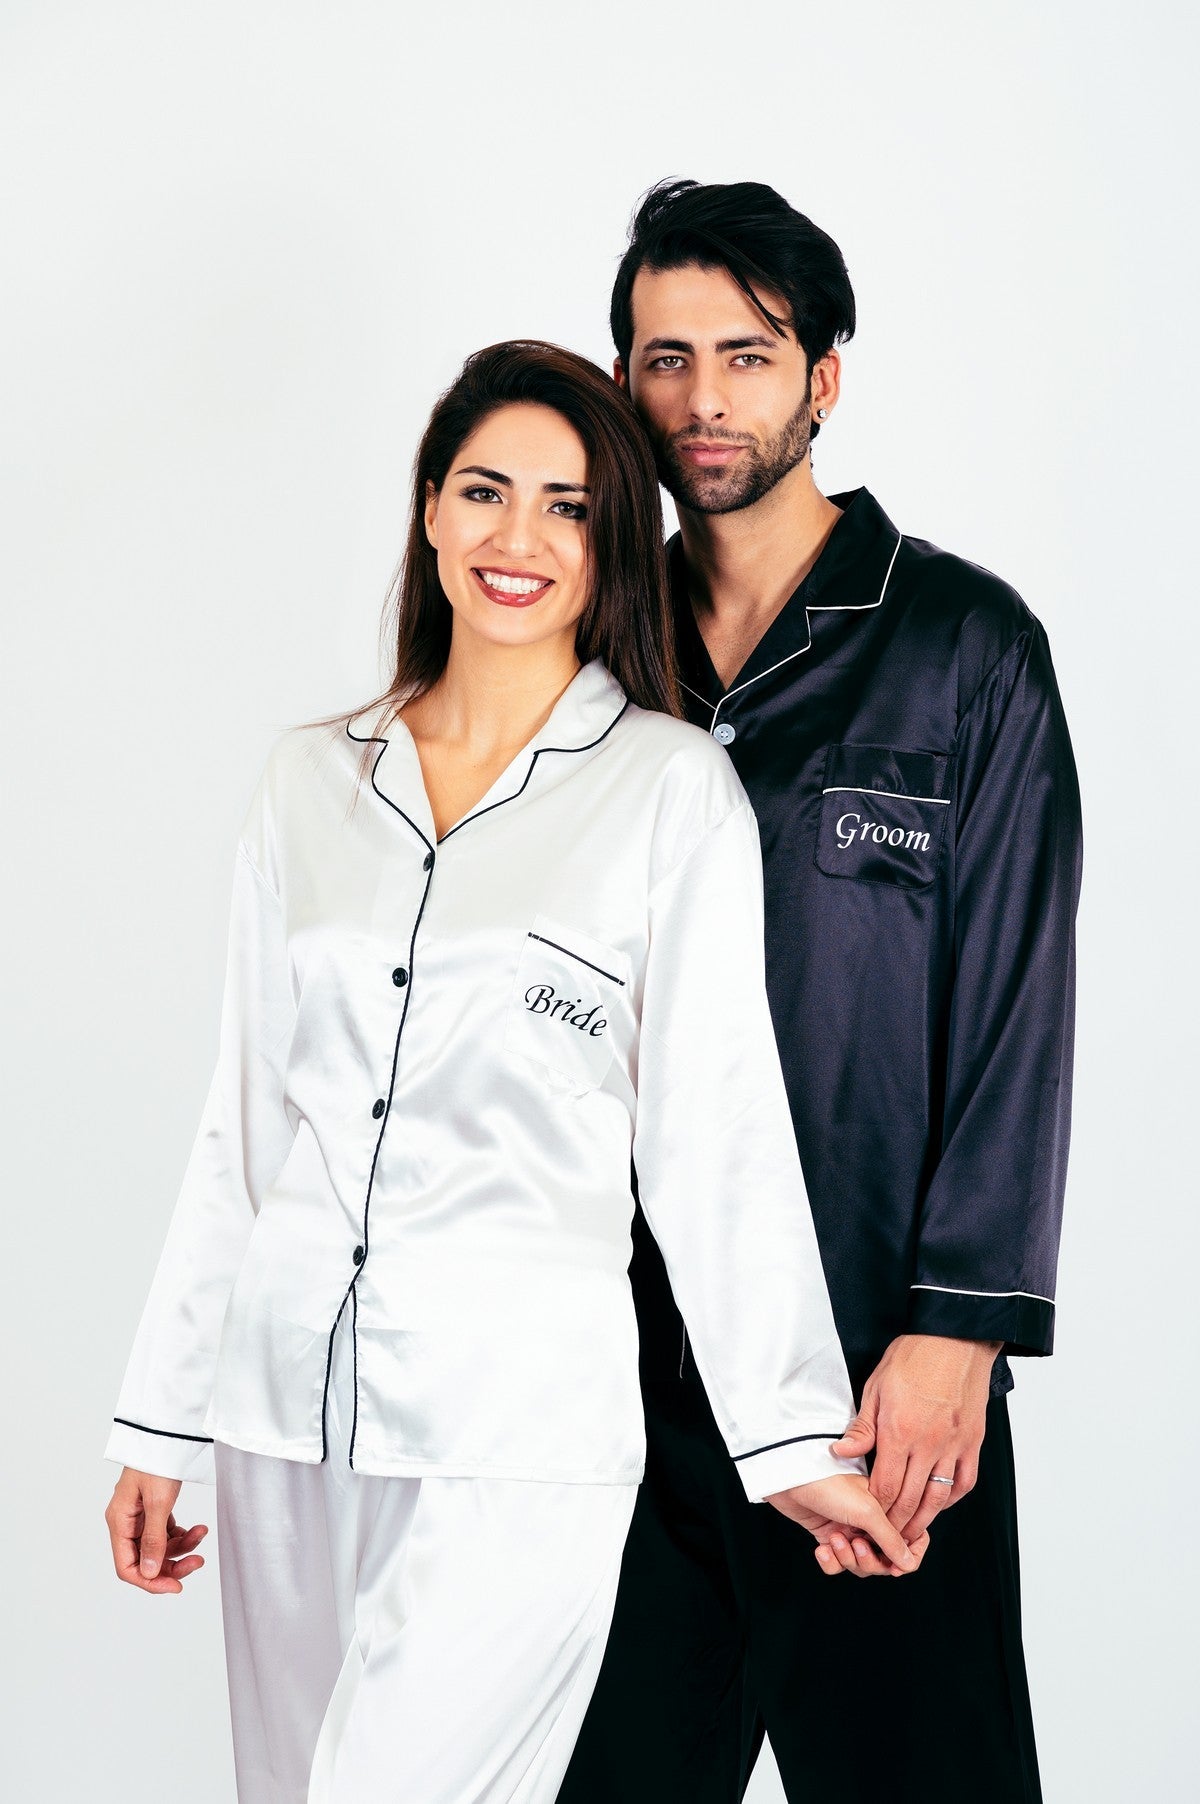 Custom Satin Pajamas for Couple, Mr and Mrs Pajama Sets, Groom and